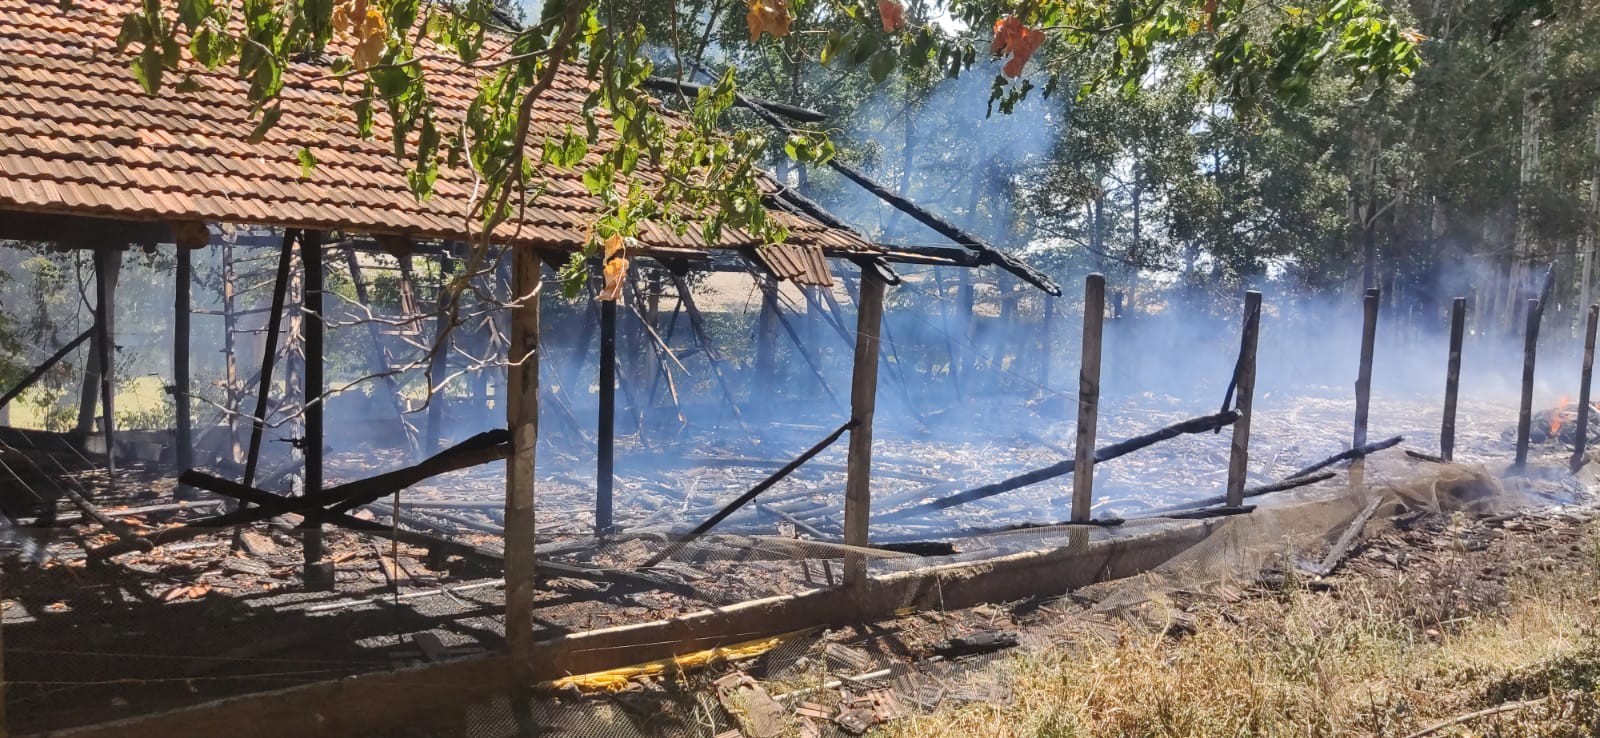 Bombeiros combatem incêndio em aviário no interior de Caibi